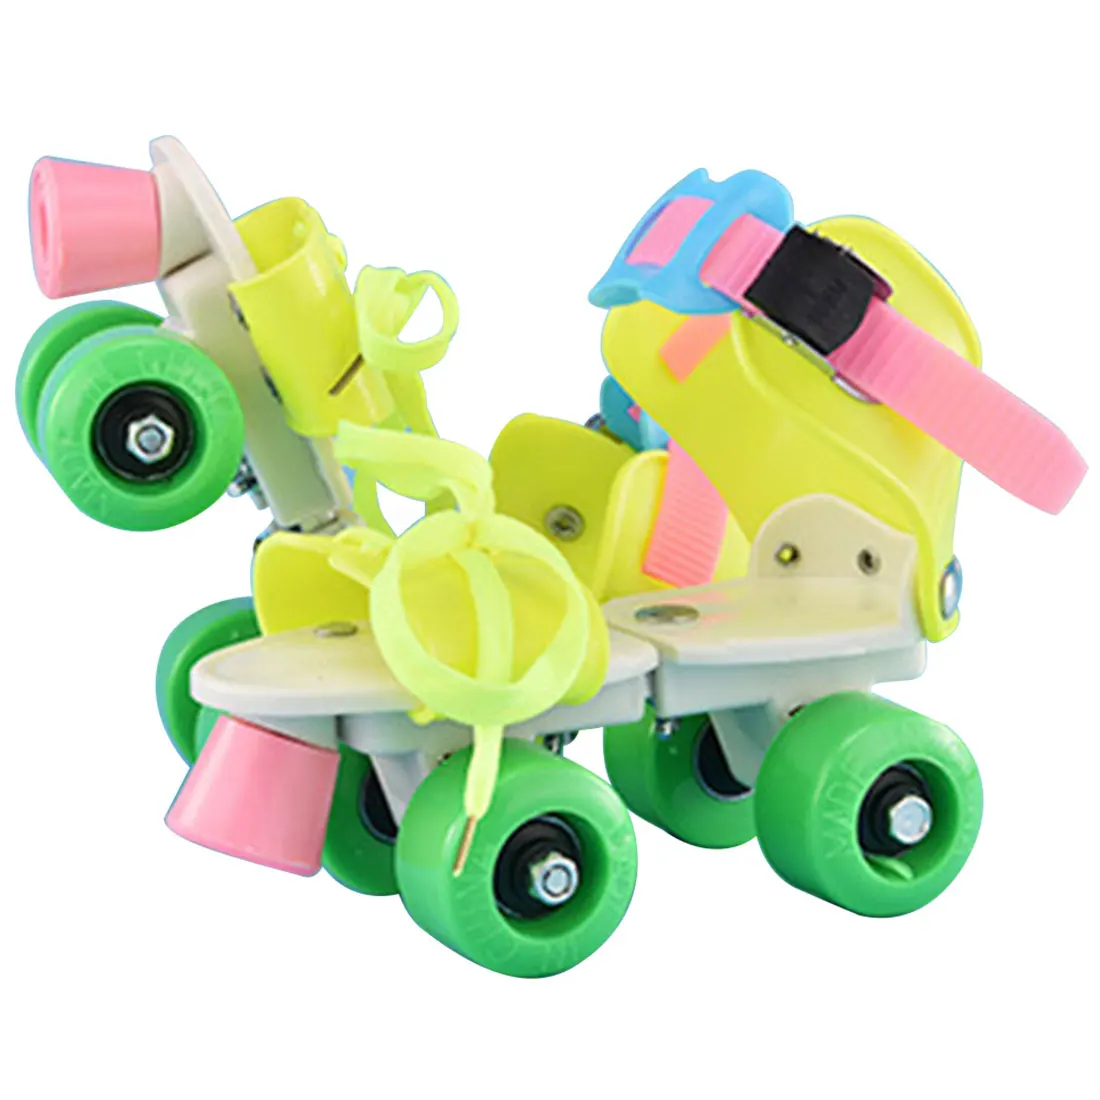 4 колёса детей роликовые коньки двухрядные Регулируемый размеры катание обувь раздвижные слалом роликовые коньки детские подарки